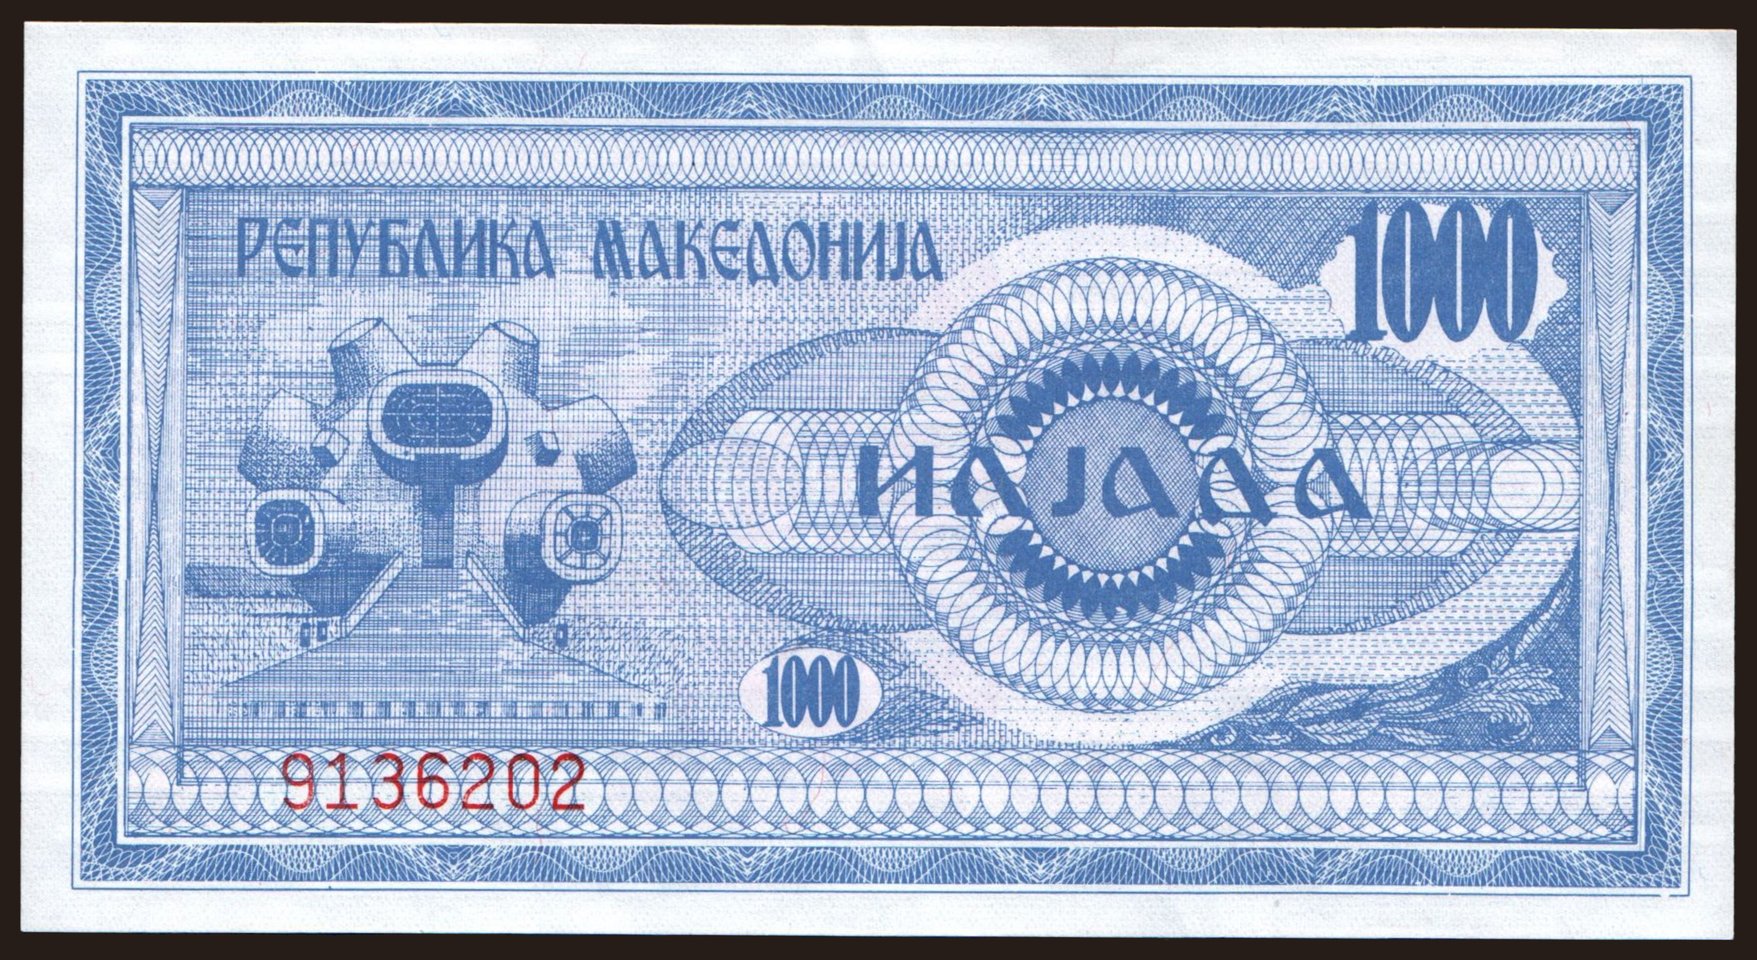 1000 denari, 1992